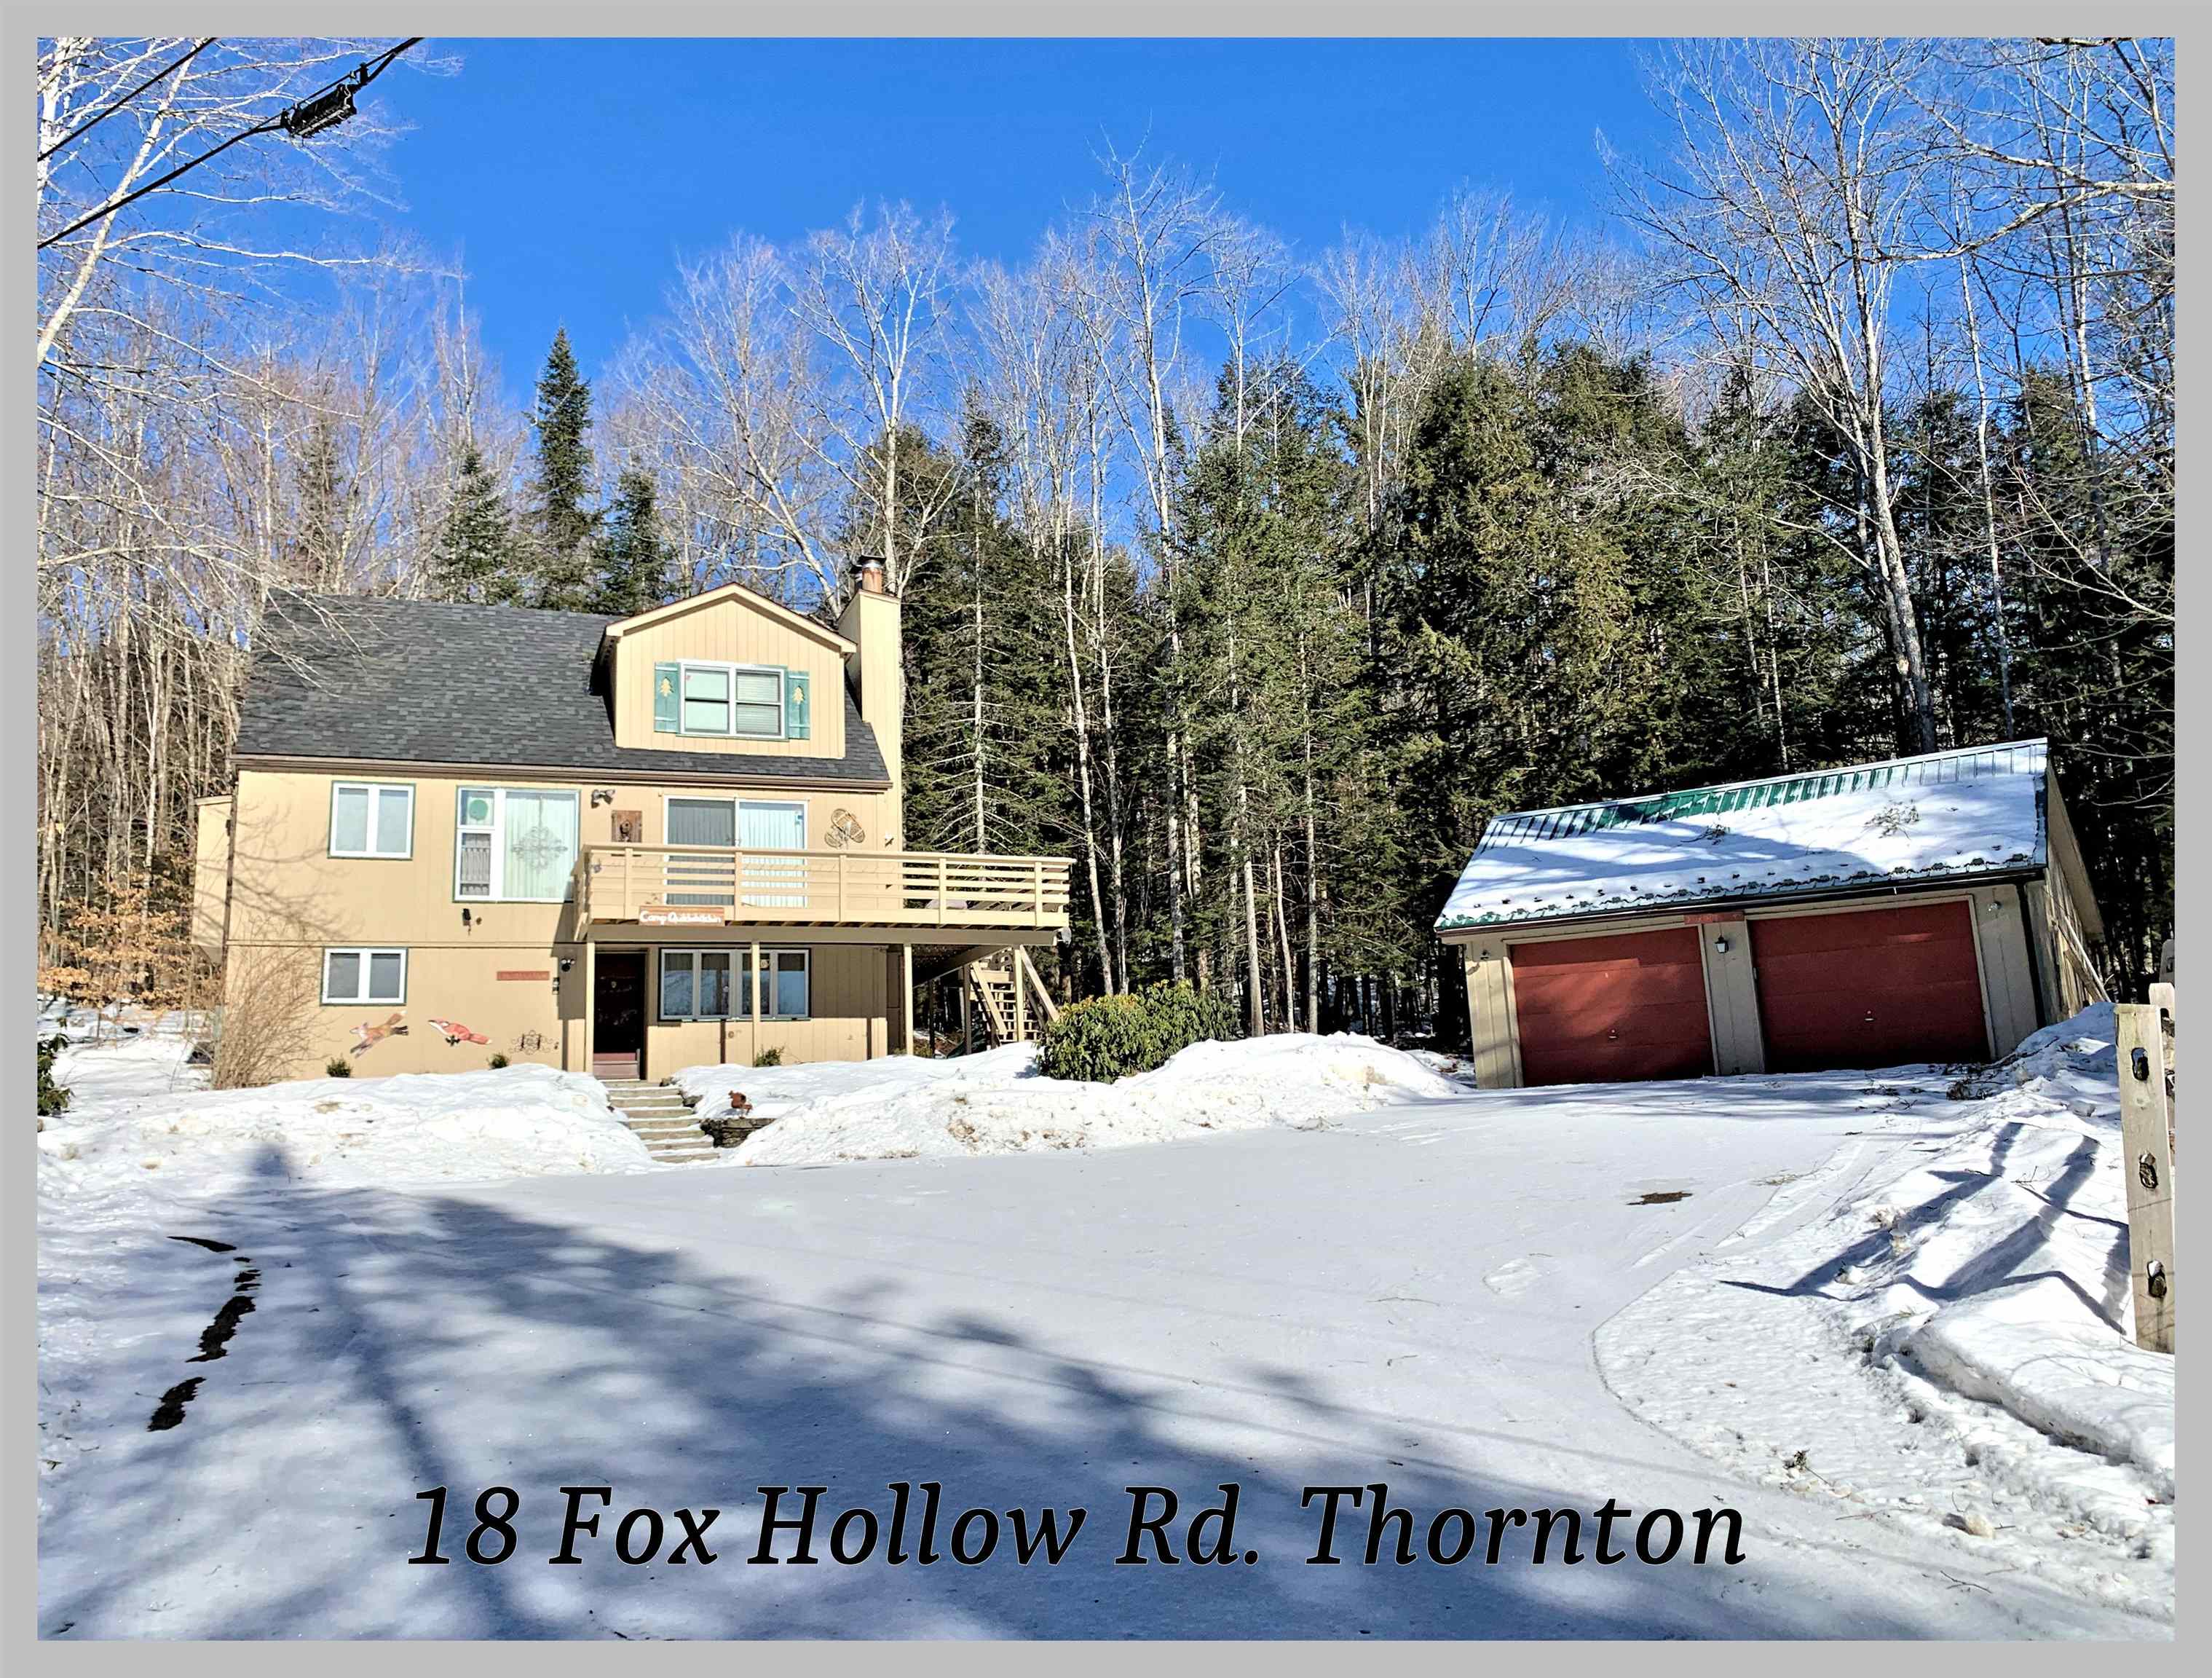 18 Fox Hollow Road Thornton, NH Photo